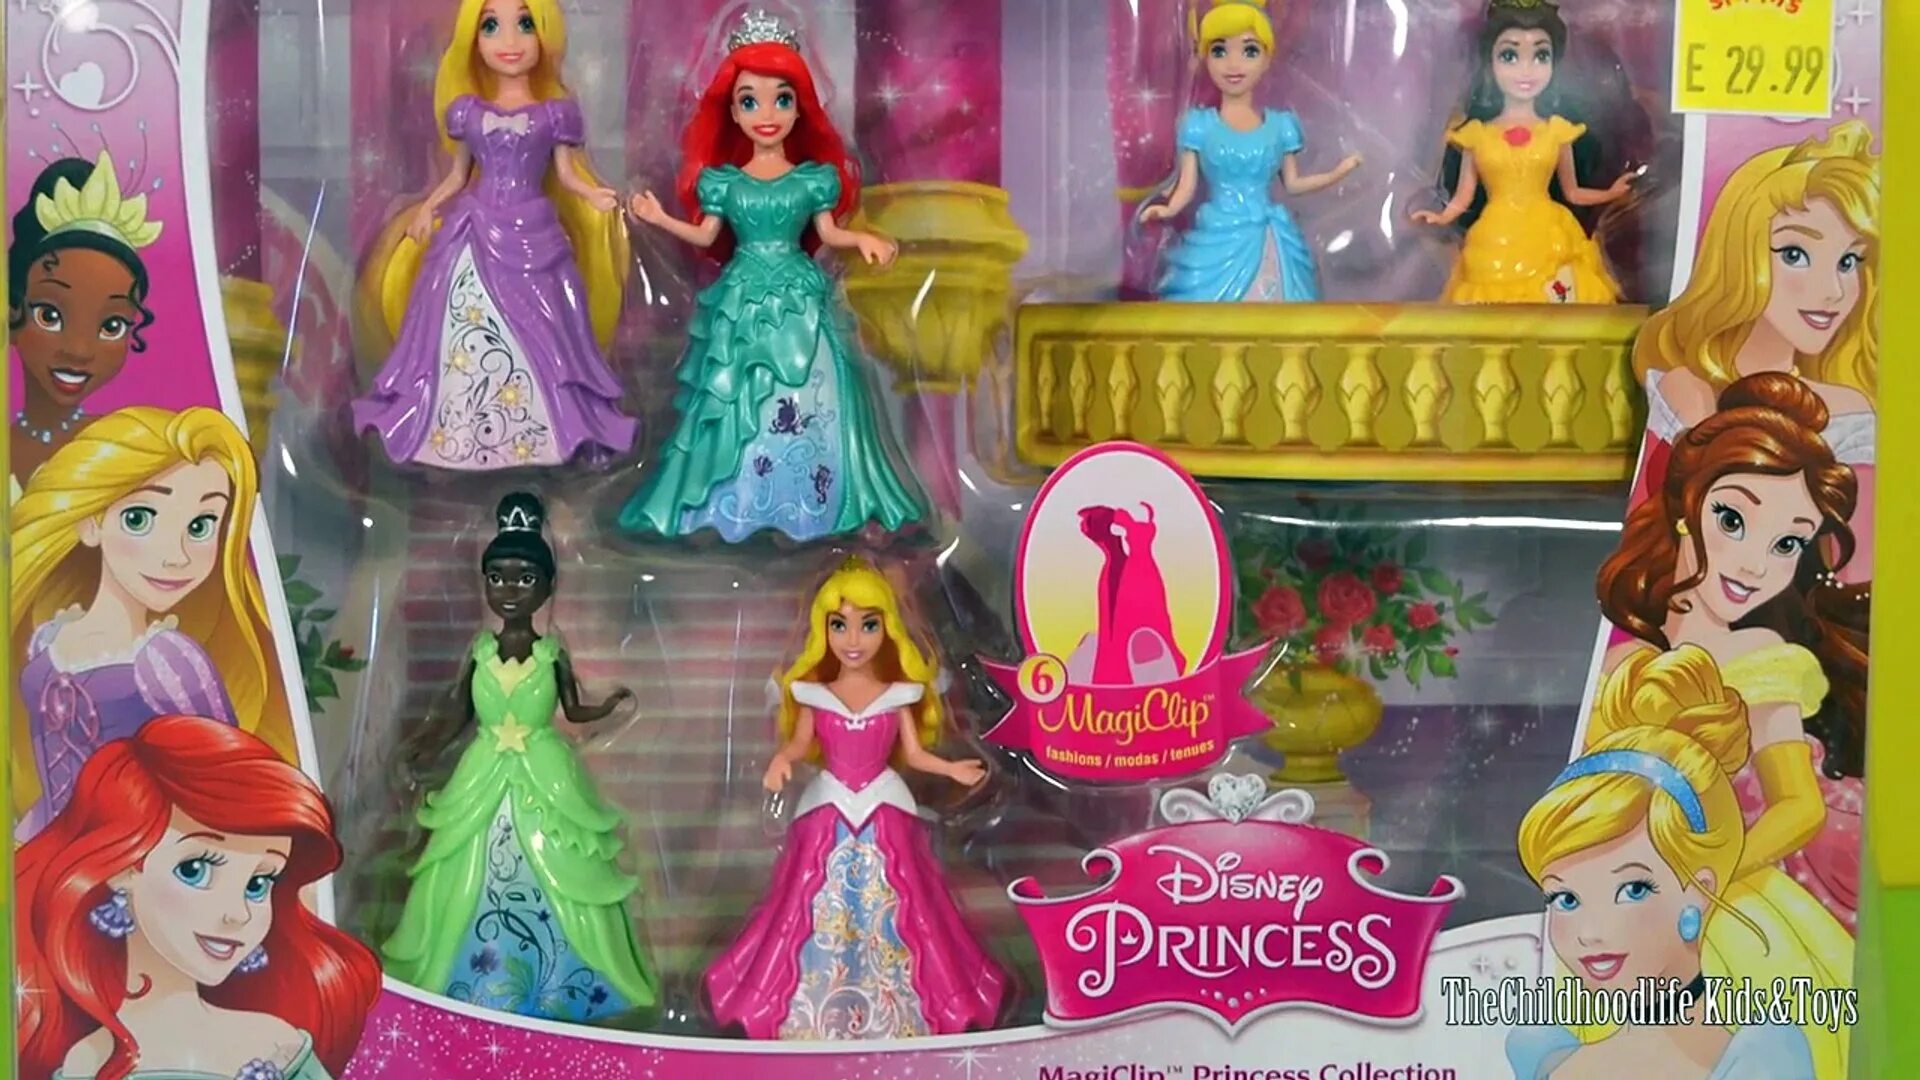 Кукла Disney Disney Princess Magiclip. Мэджик Липс куклы Дисней. Набор сэджик Дисней принцесса.